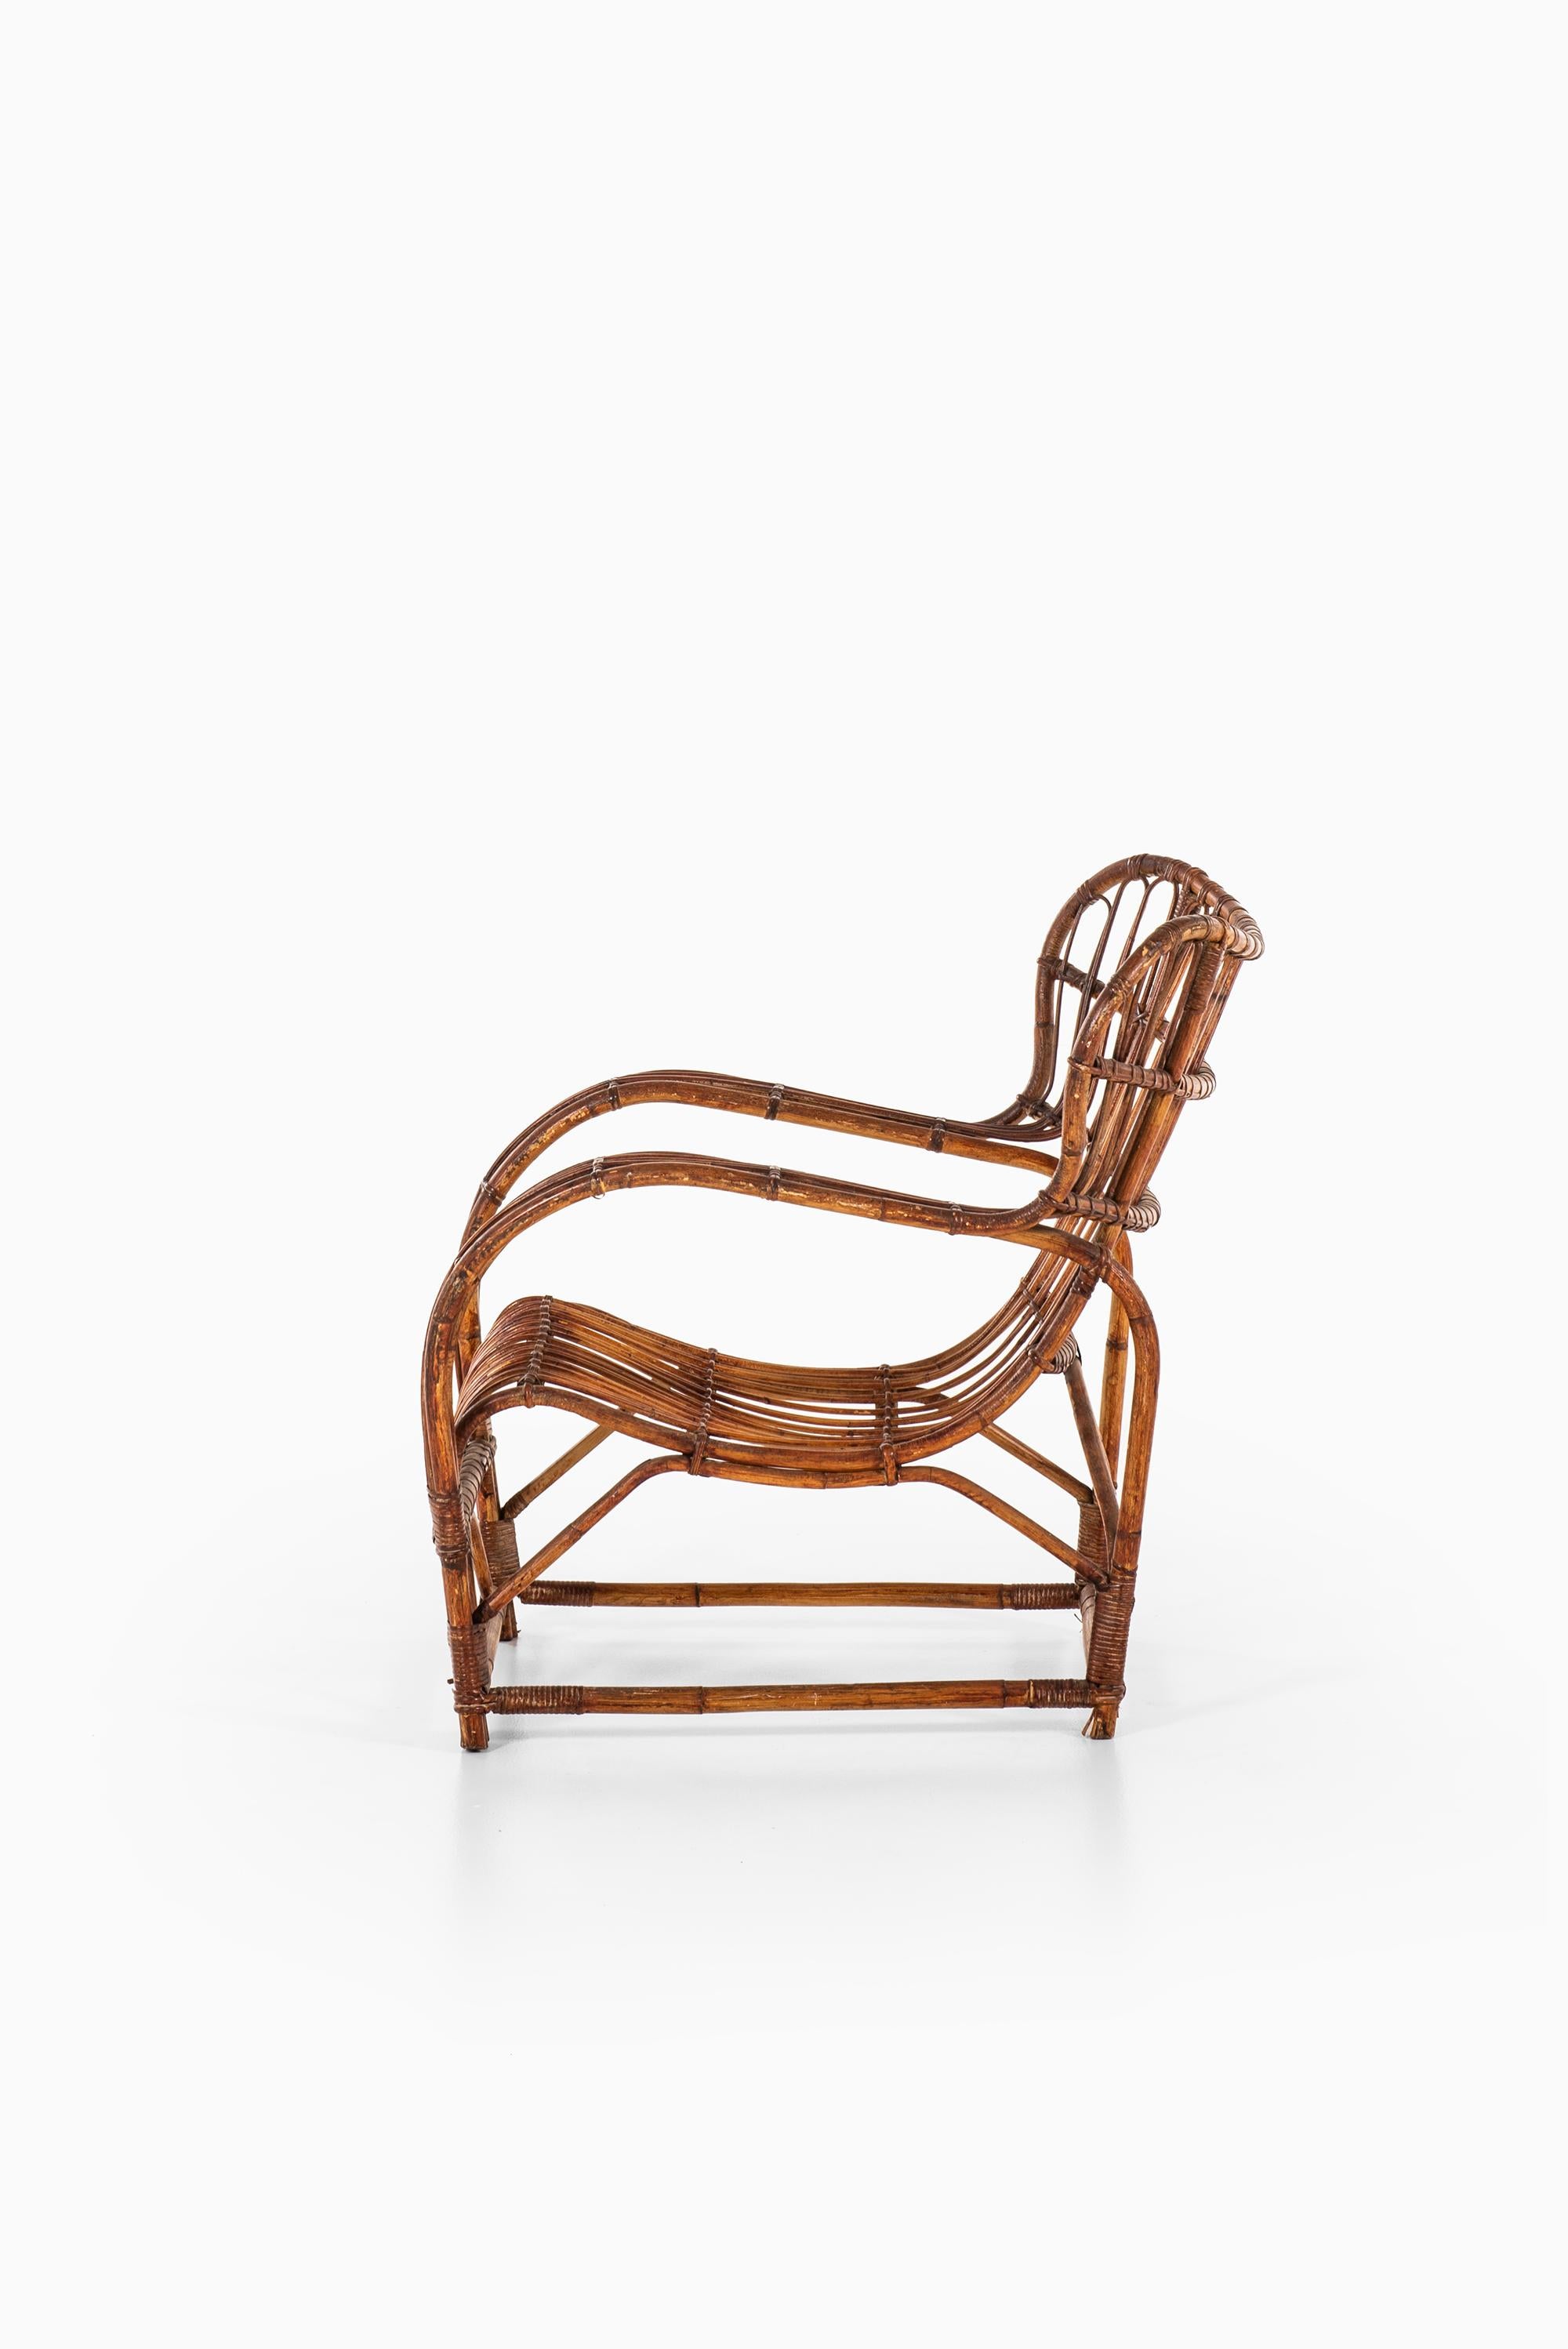 Fabric Viggo Boesen Easy Chair Produced by E.V.A. Nissen & Co in Denmark